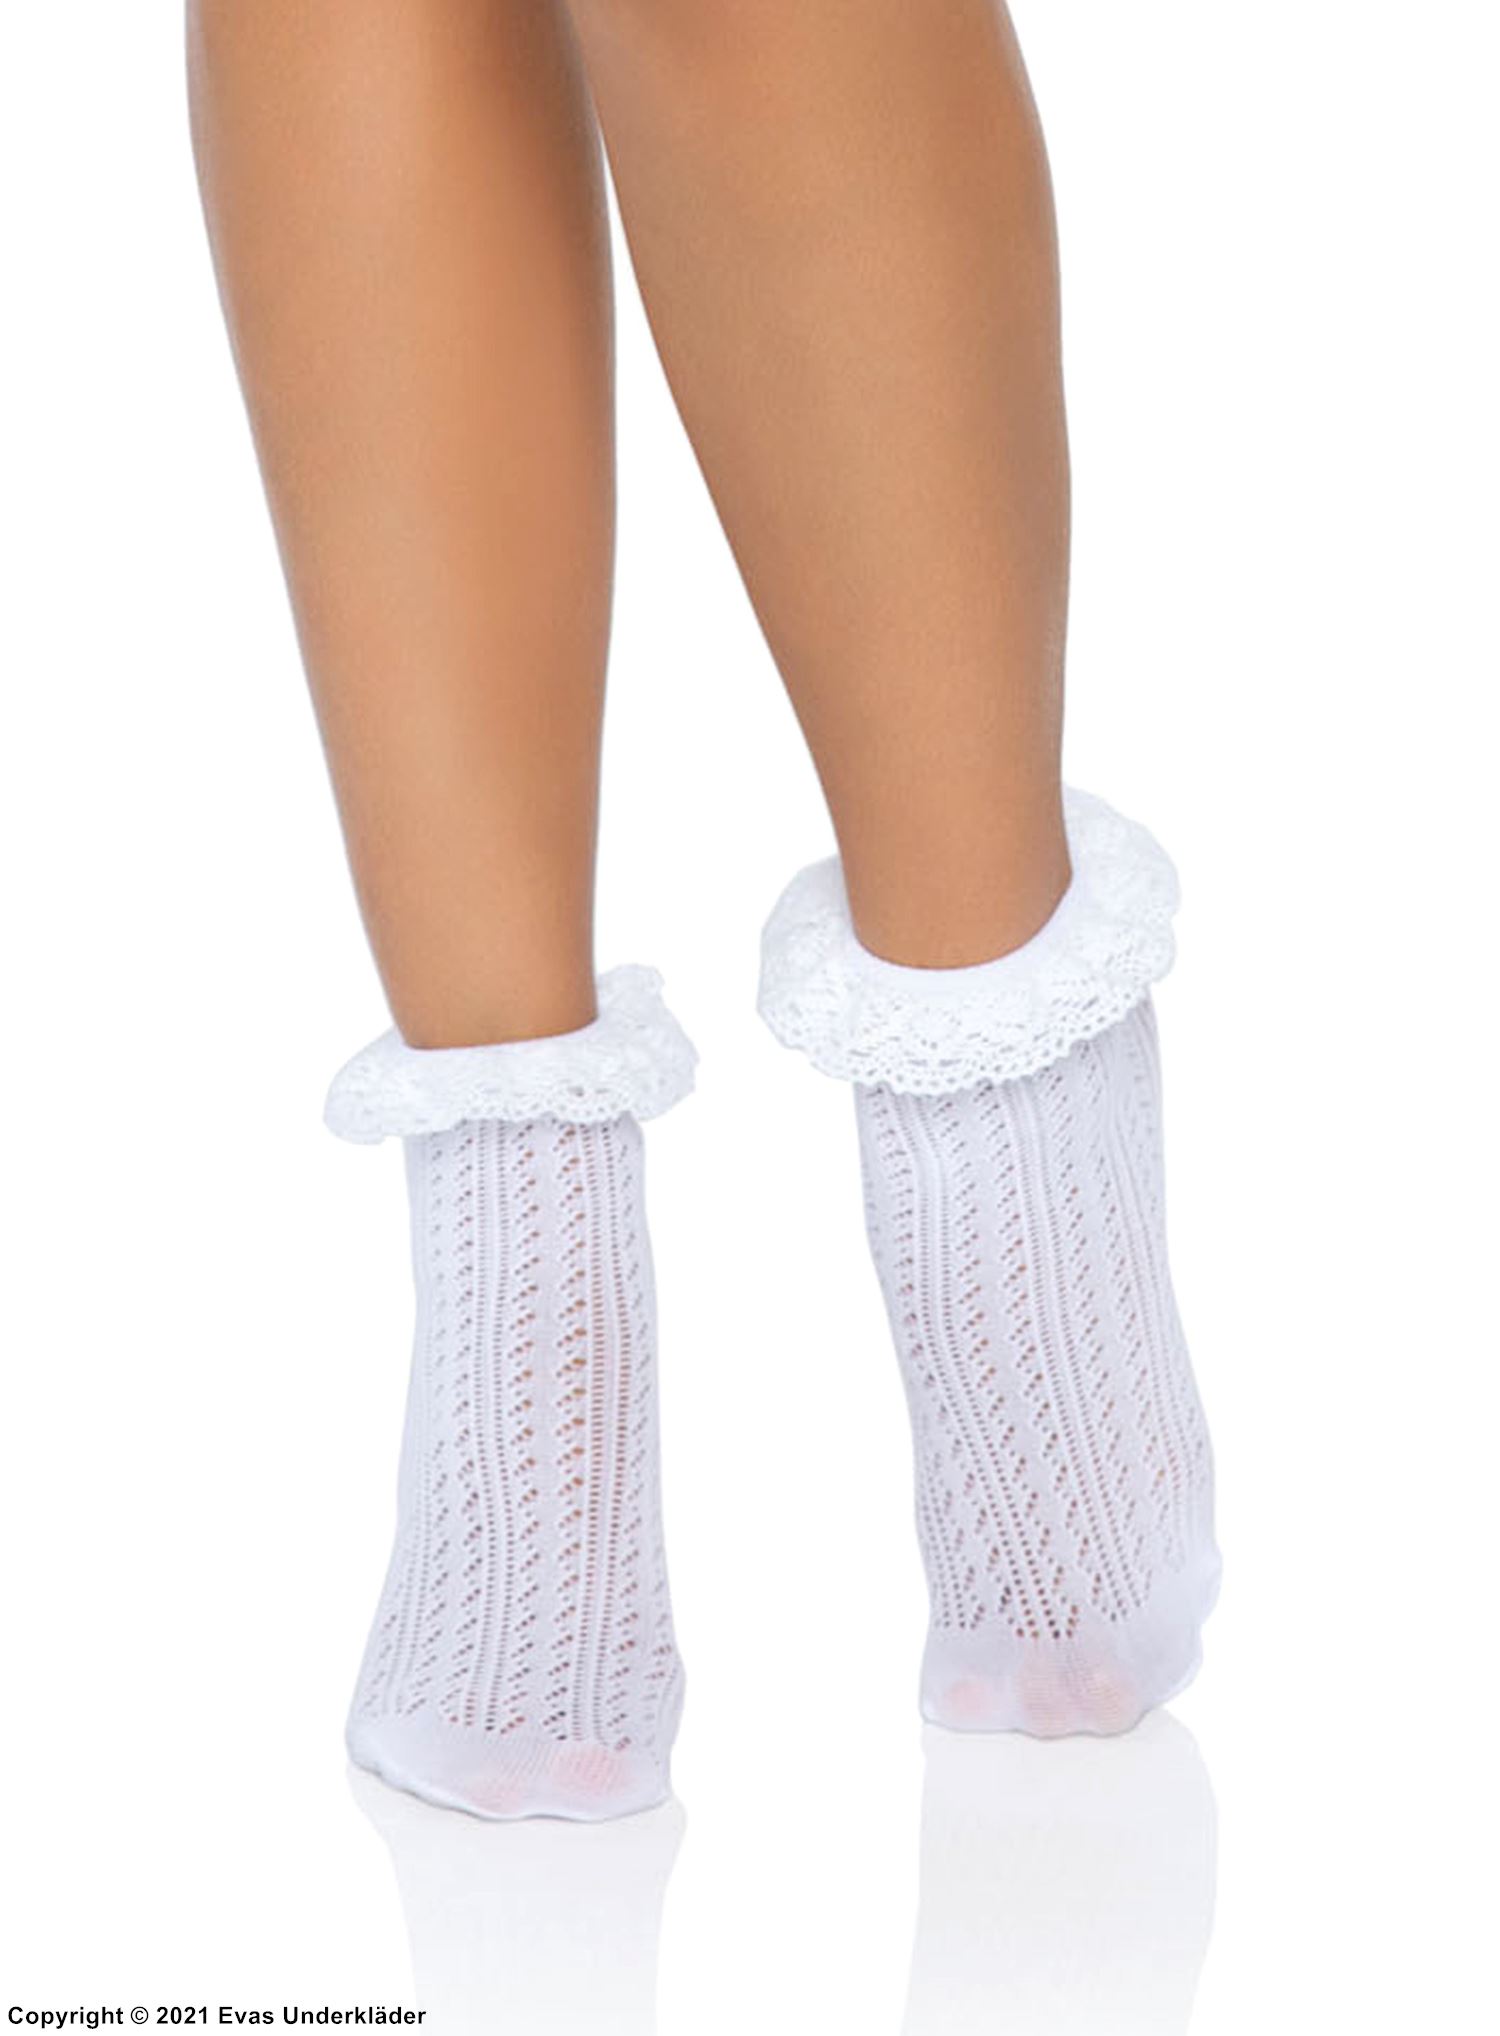 Ankle socks, crochet lace, ruffle trim